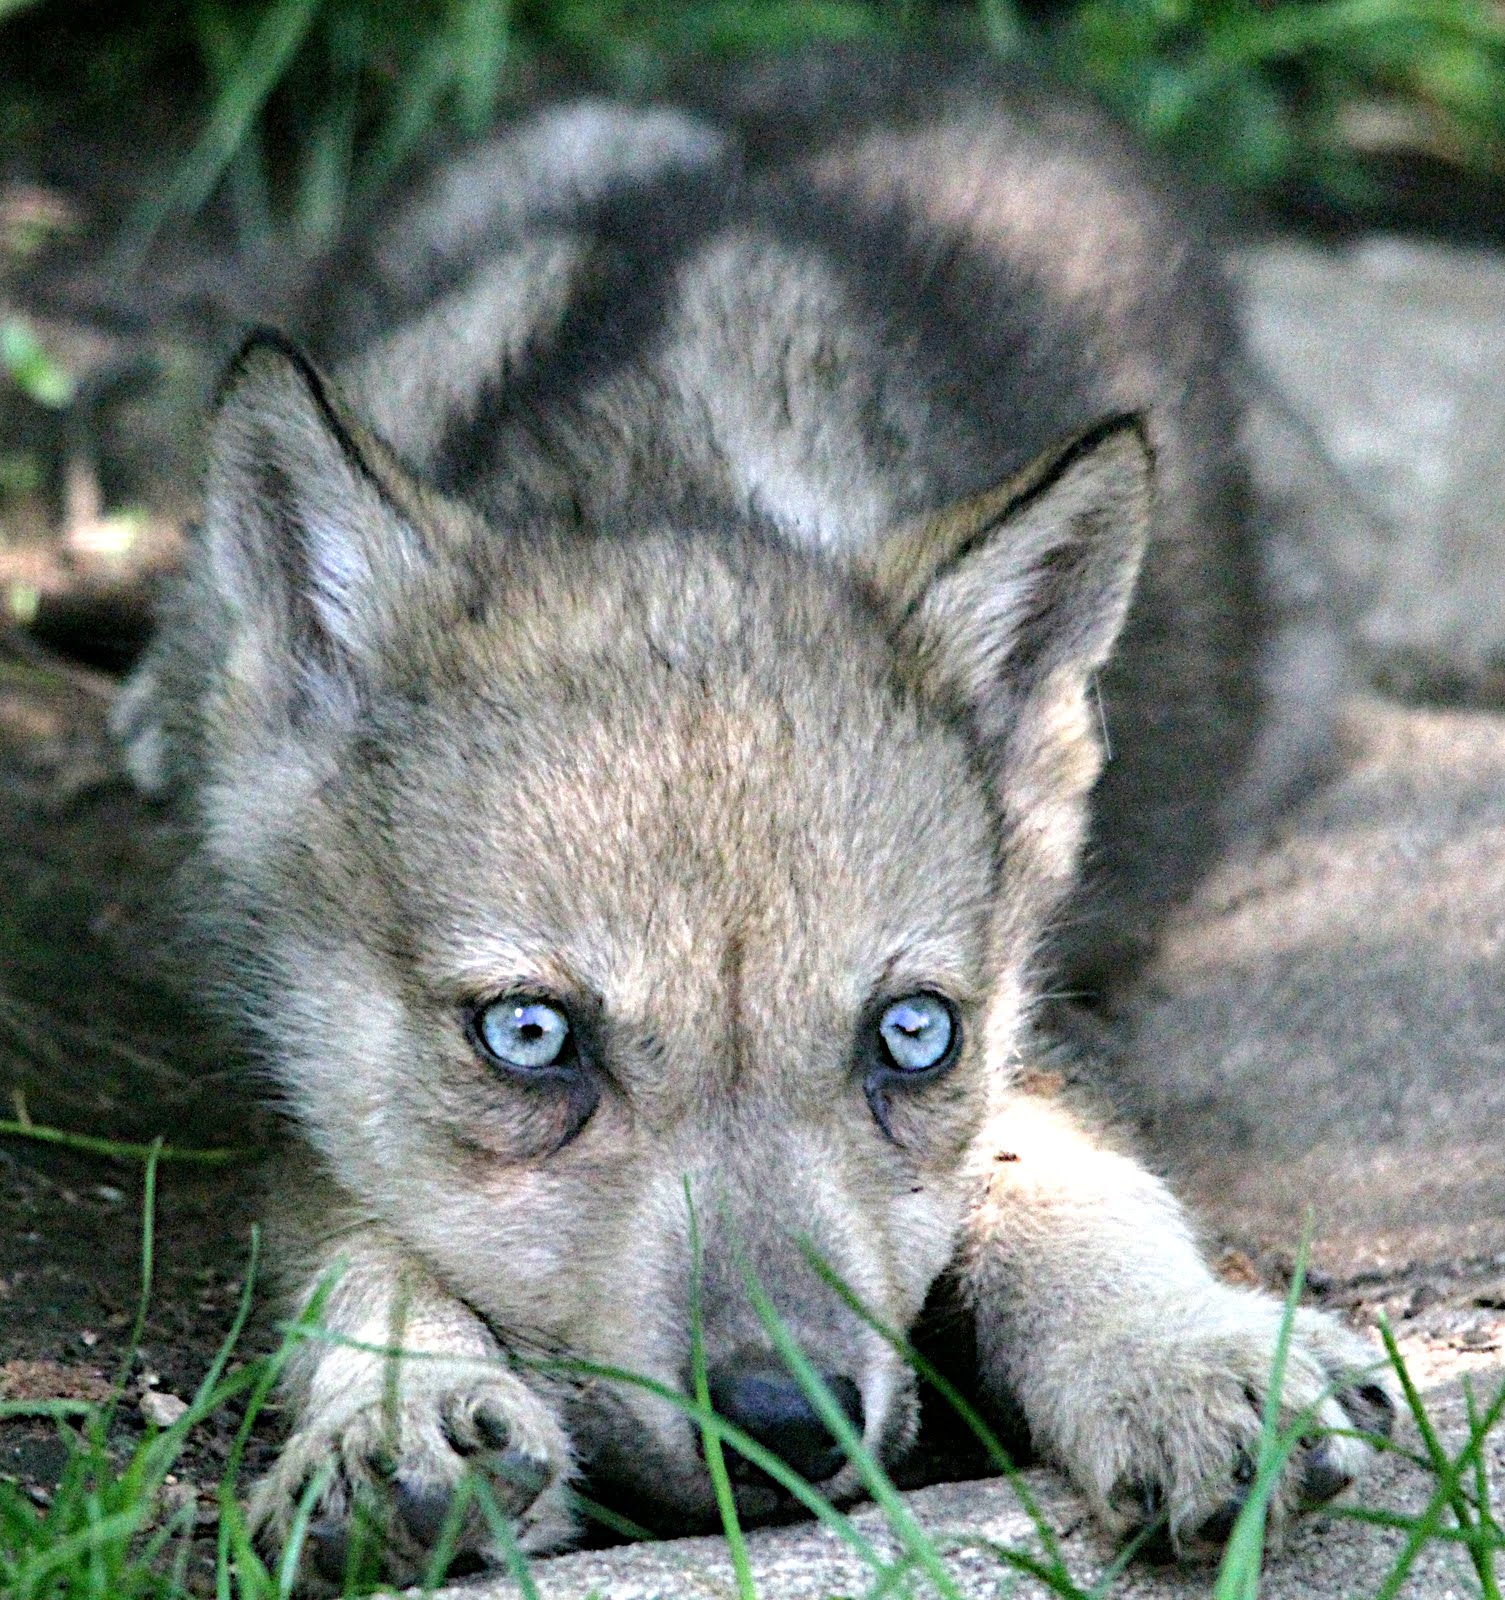 狼崽刚出生时眼睛是蓝色的,和哈士奇的眼睛一样.